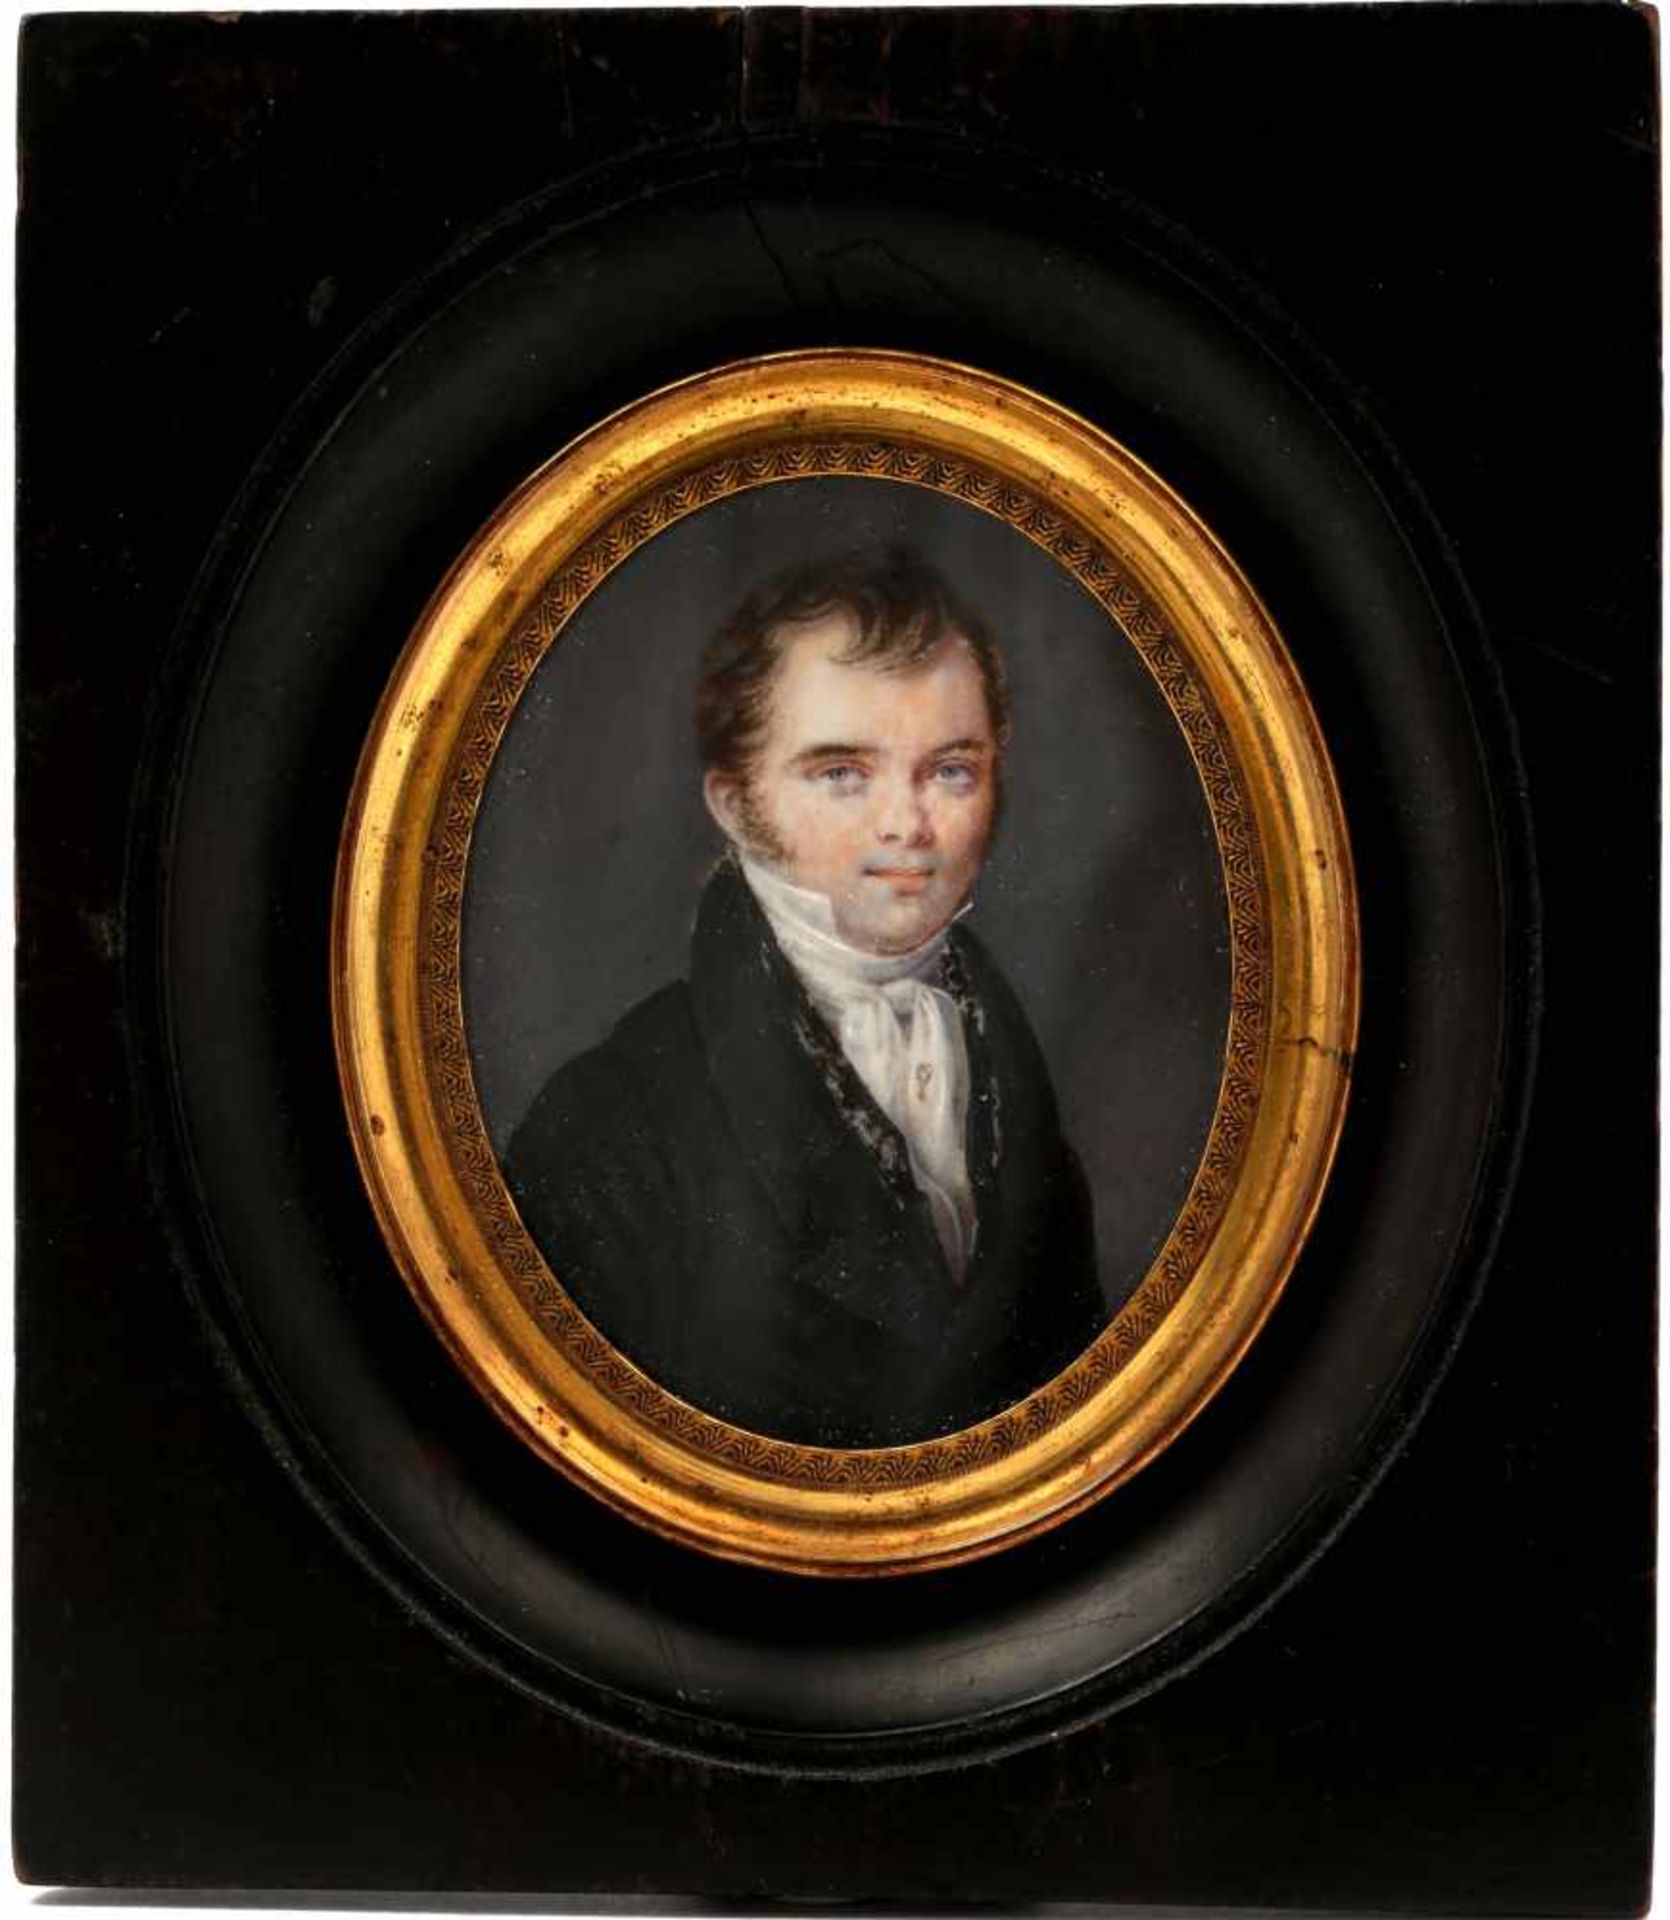 MARTIN, E. (1790 - 1876)